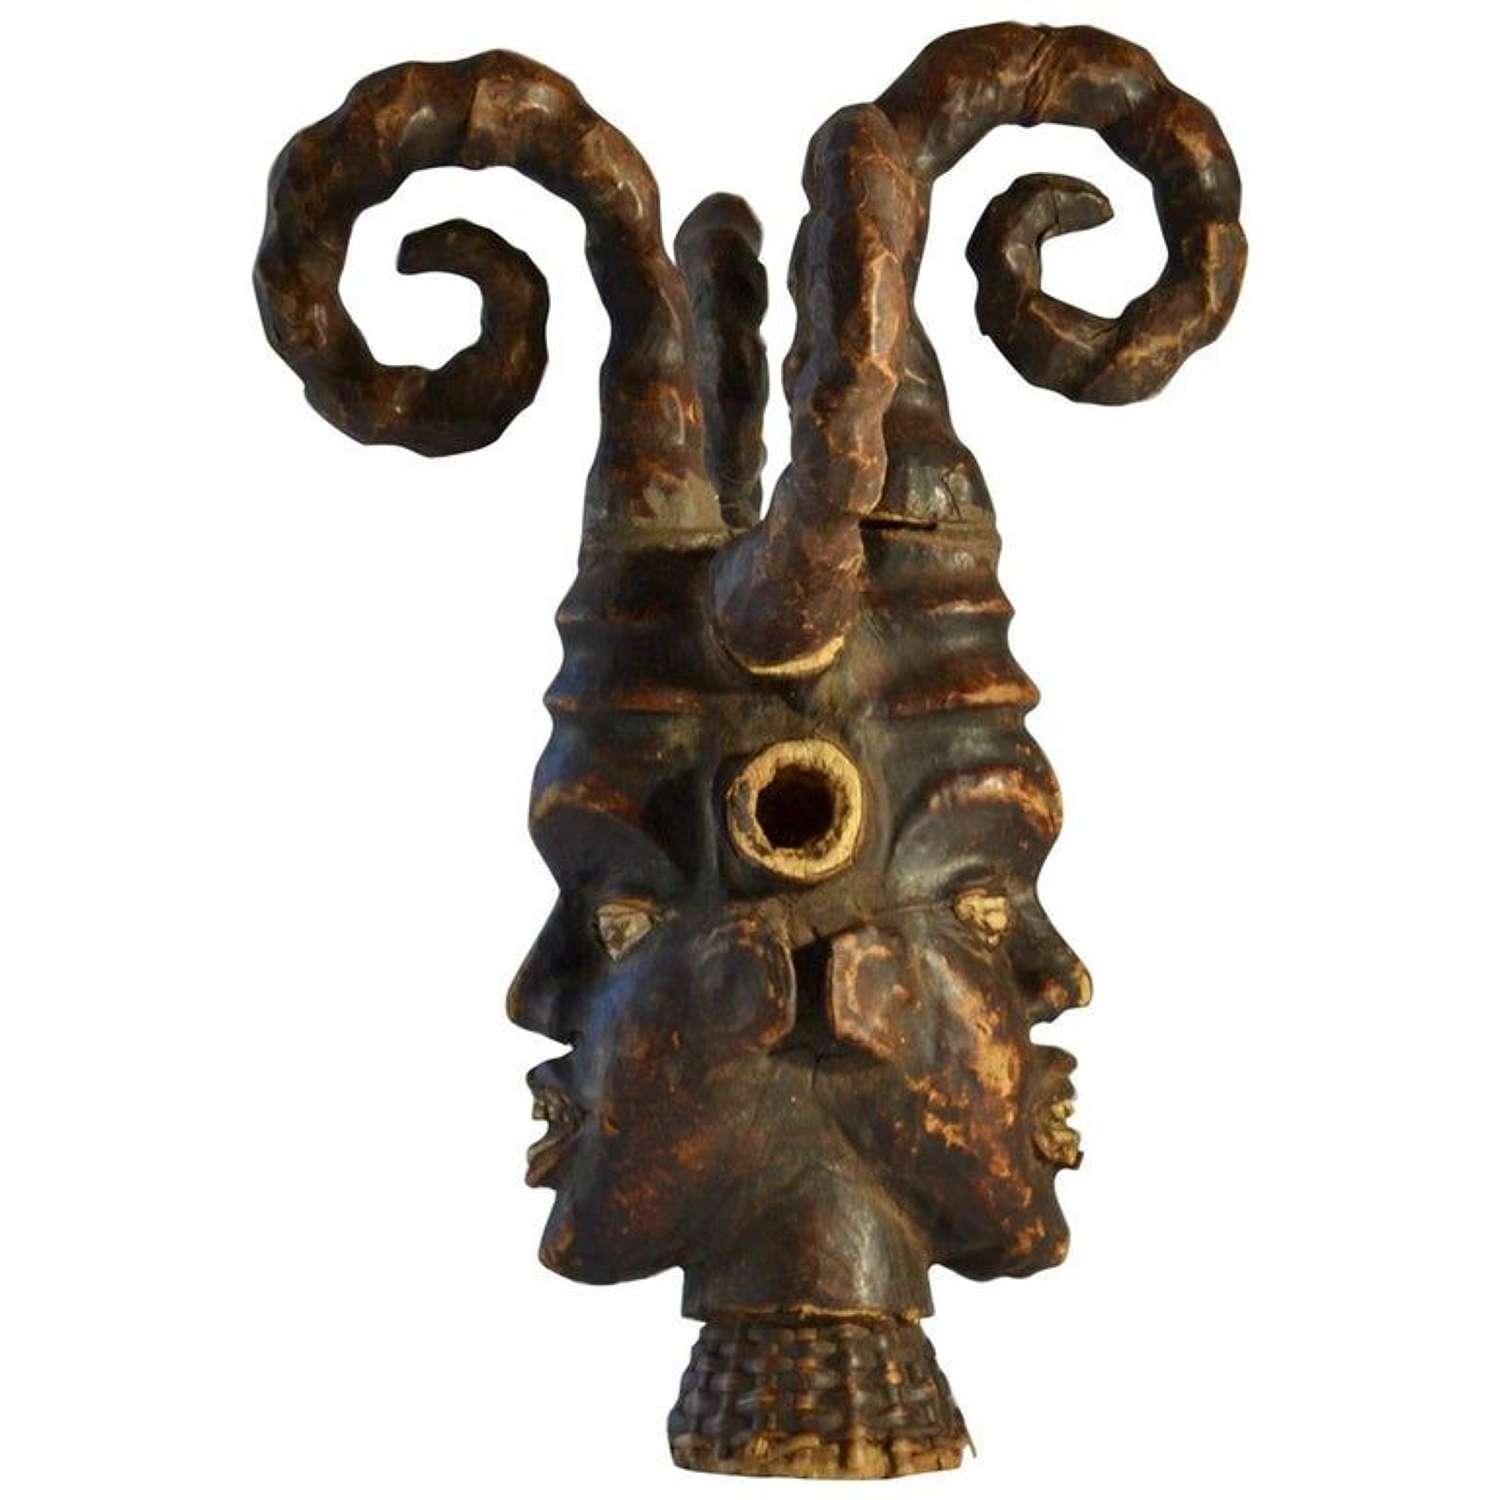 African Ritual Headdress Sculpture from Nigeria